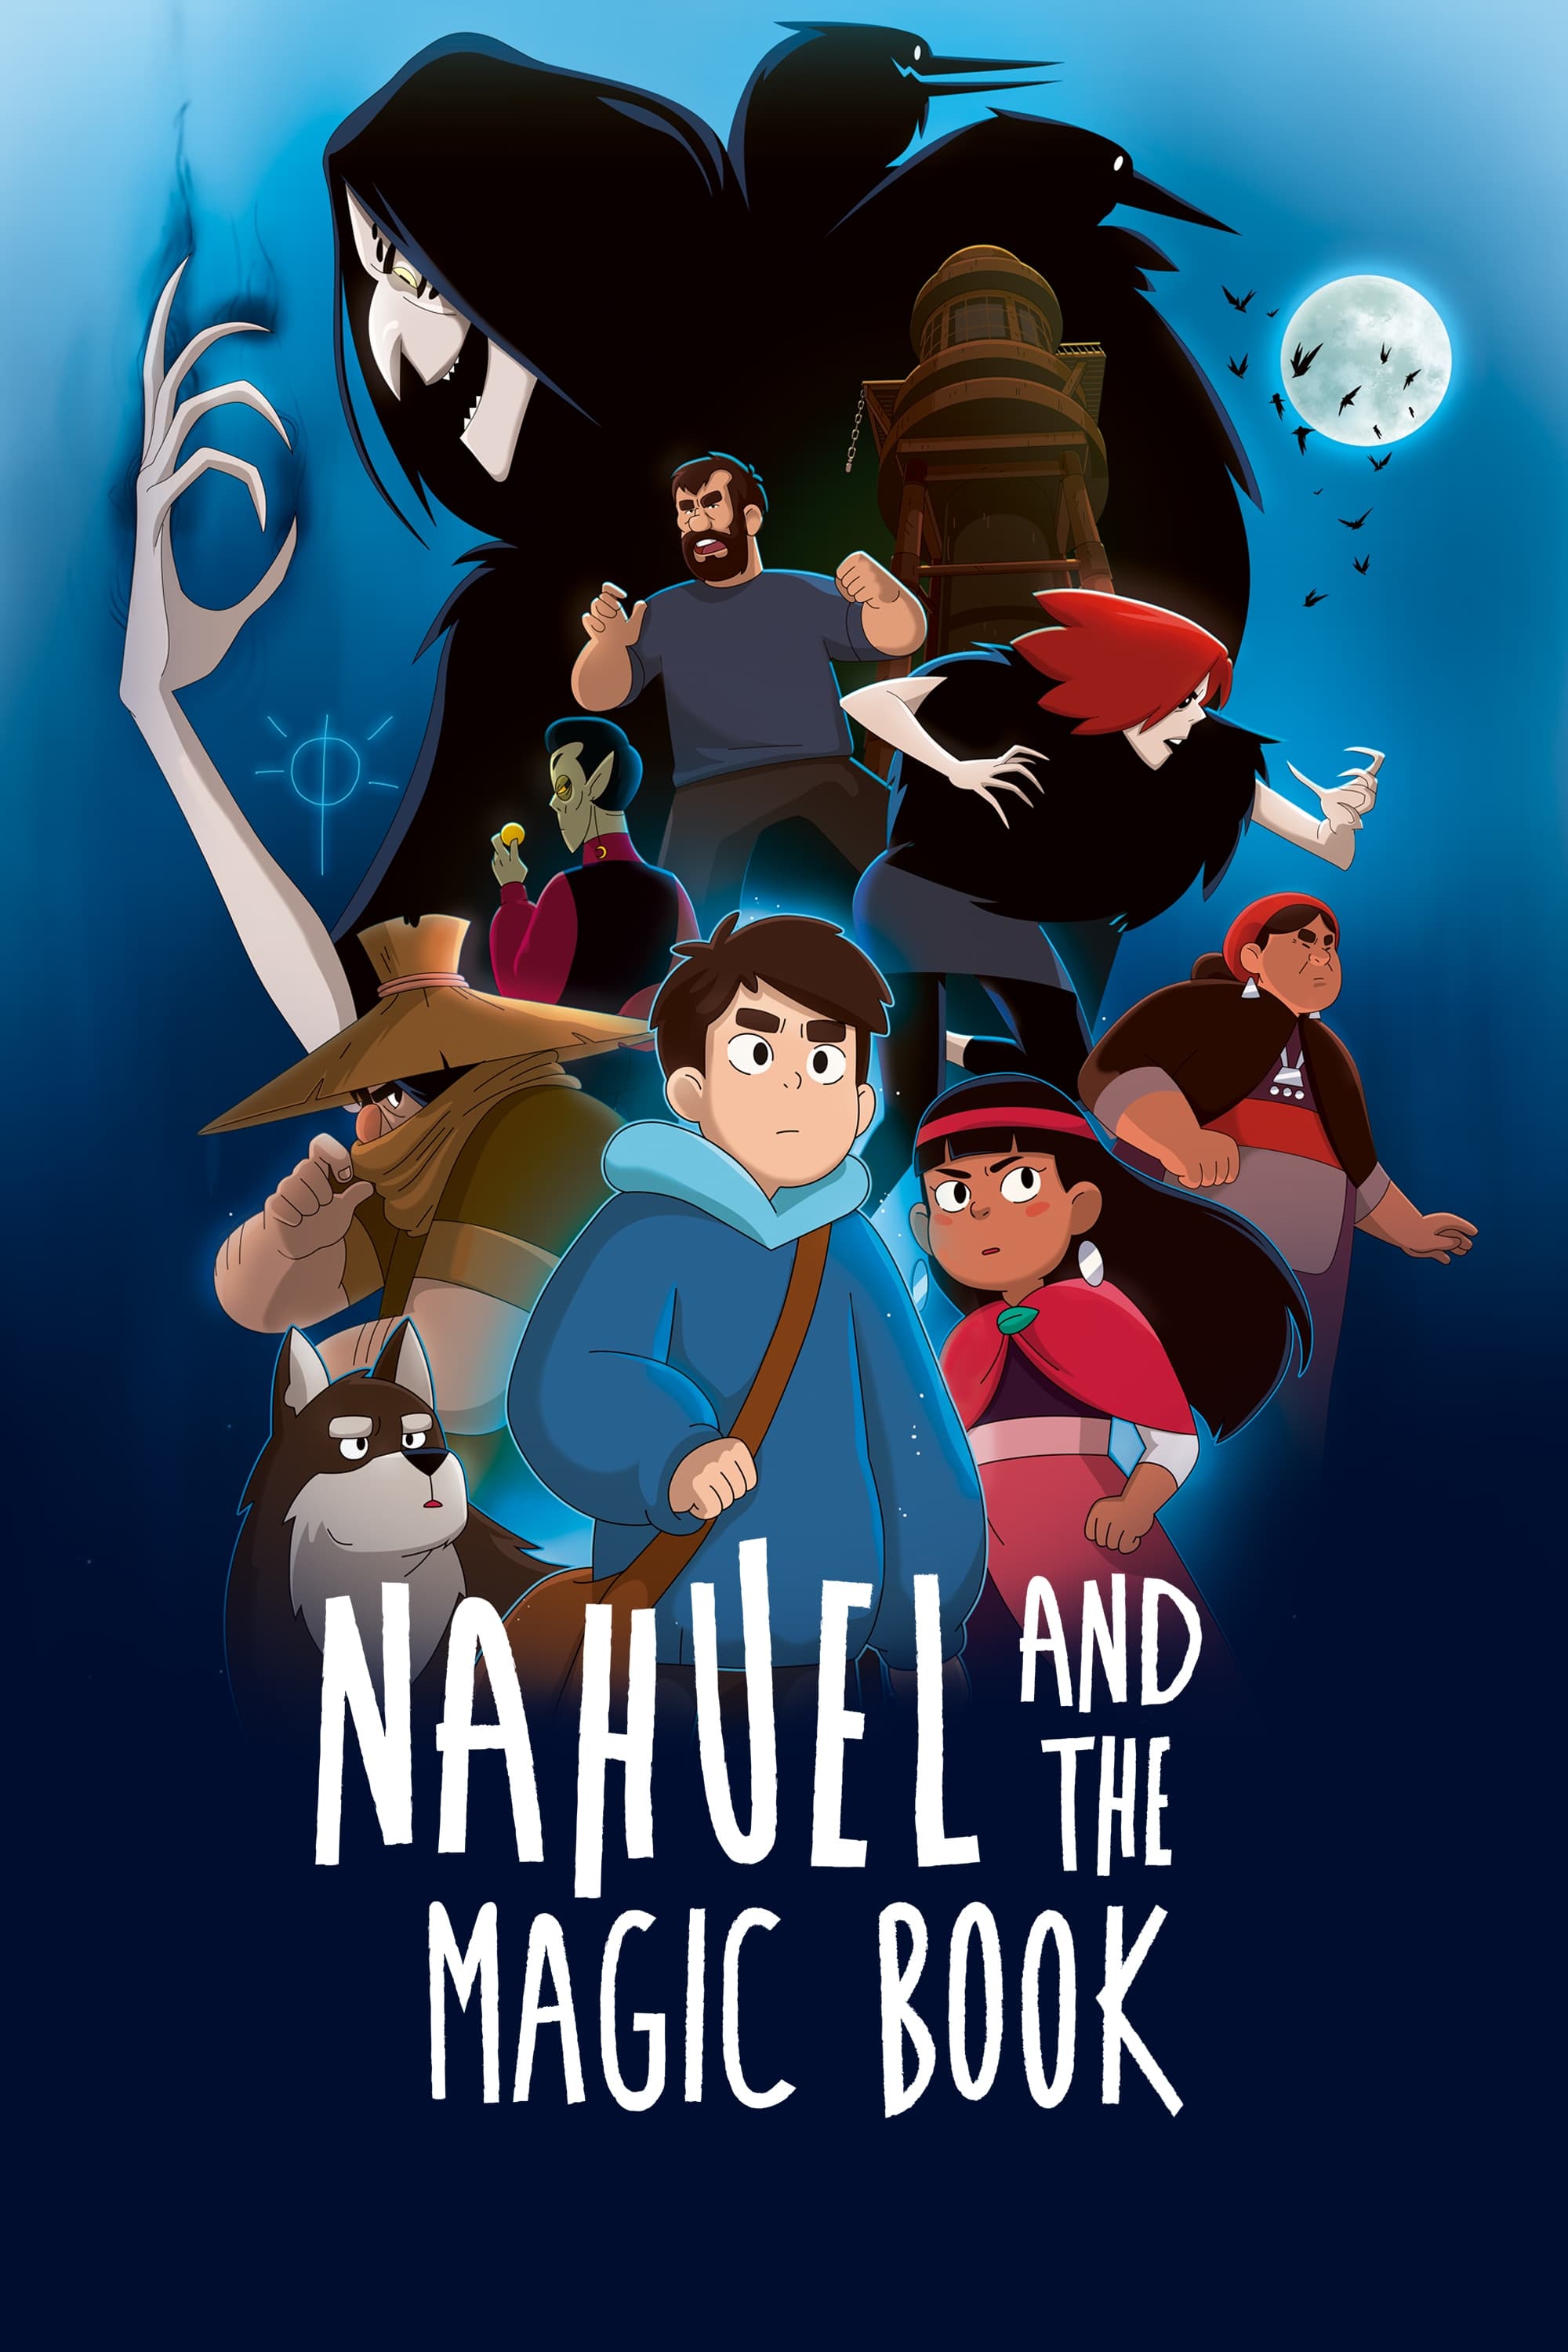 Nahuel and the Magic Book (2020)